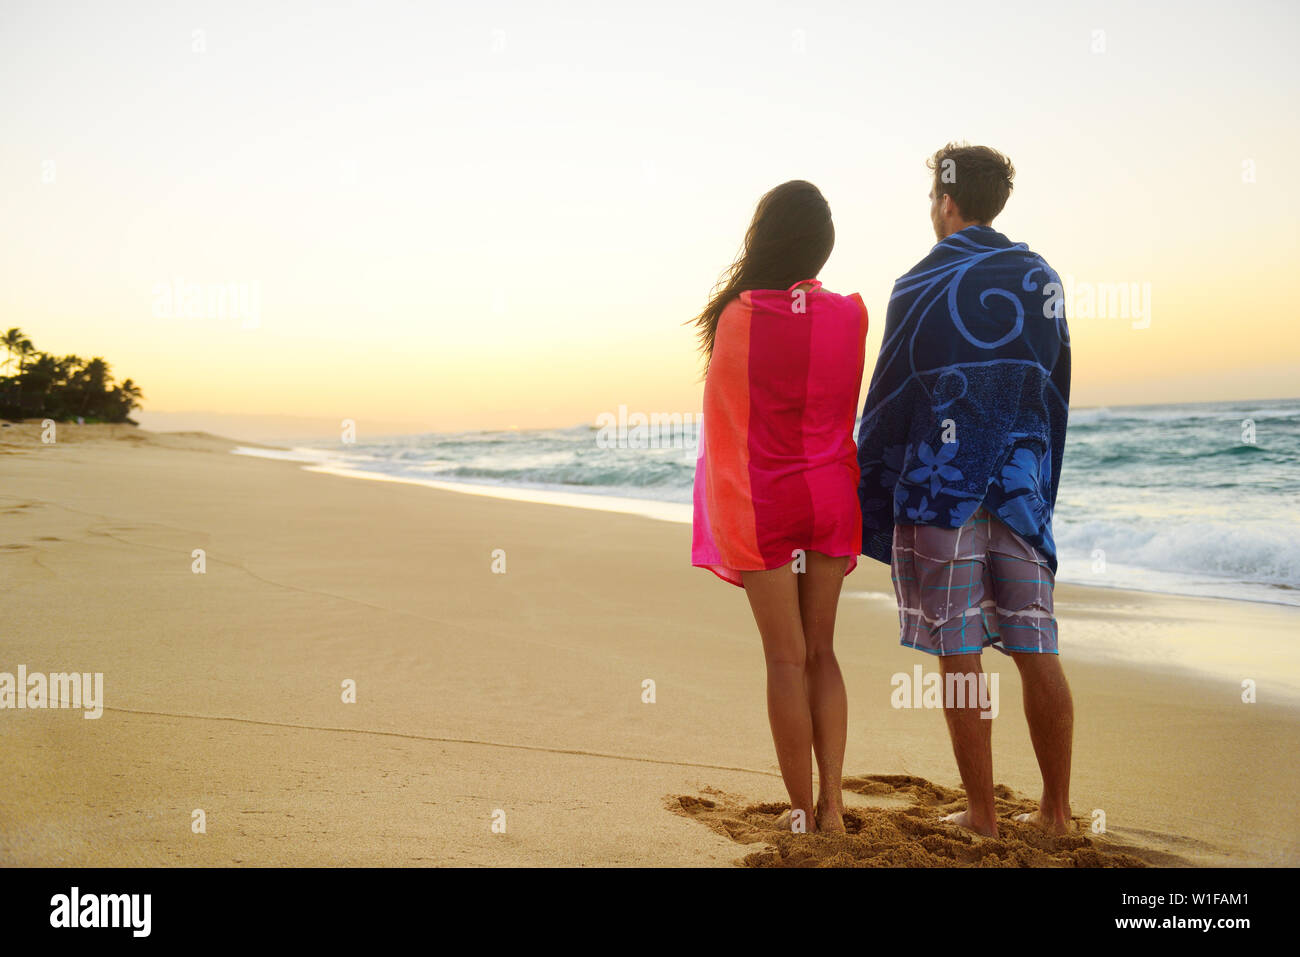 Paar stehend in Strand sand, Handtücher über die Schultern genießen Ozean Sonnenuntergang während Reisen Urlaub Wochenende Urlaub. Mixed Race Paar, asiatische Frau, kaukasische Mann. Stockfoto